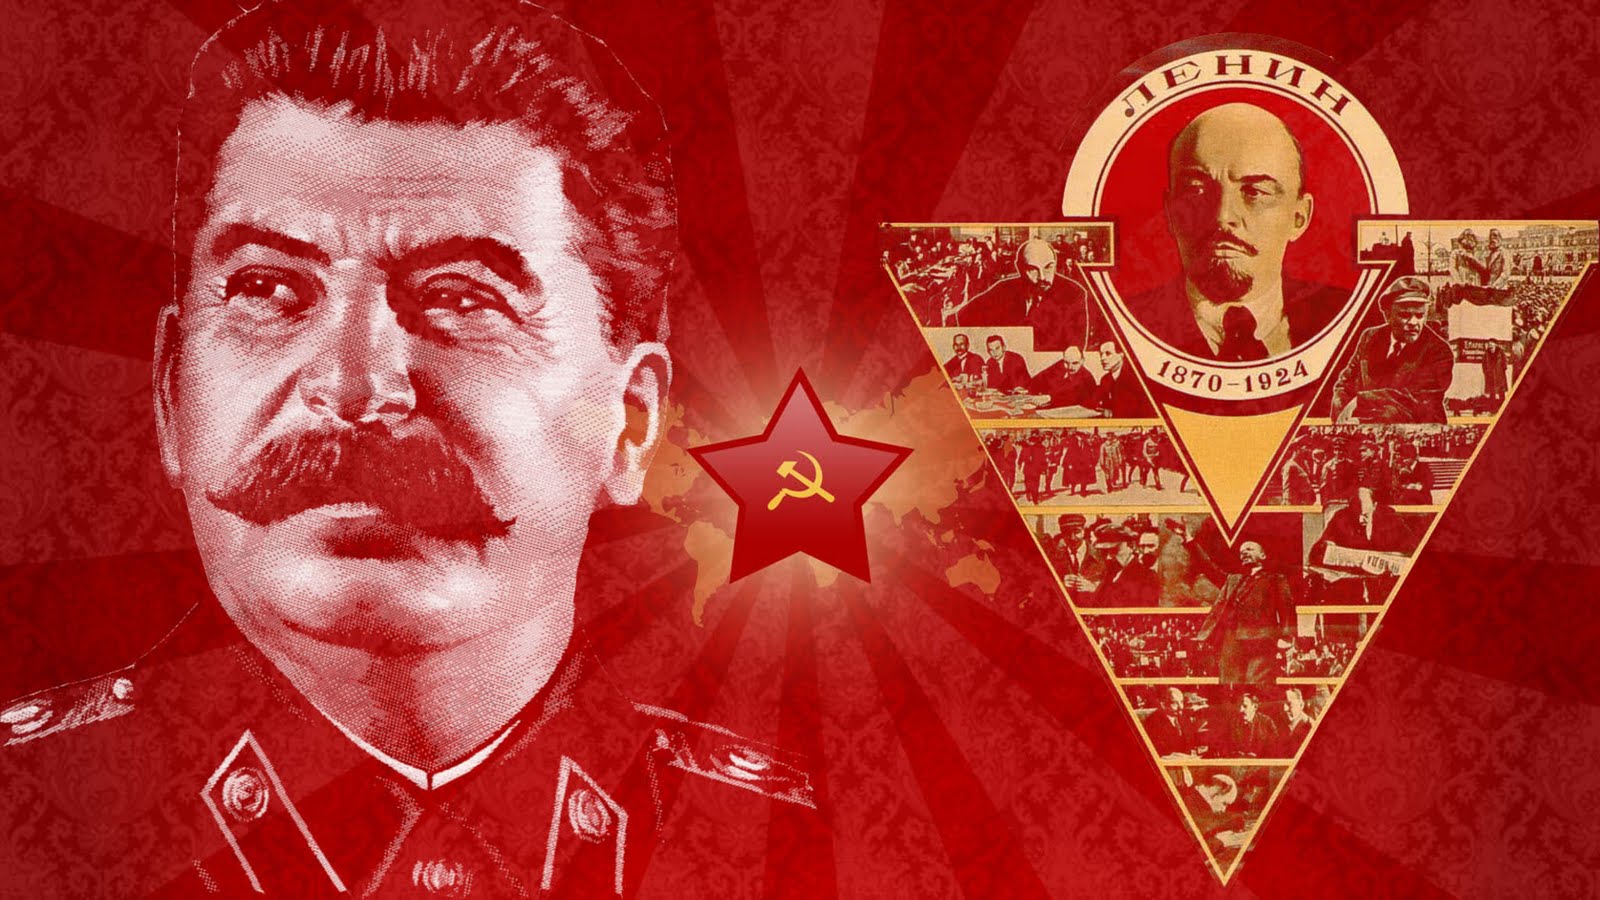 Historical Wallpaper Joseph Stalin For